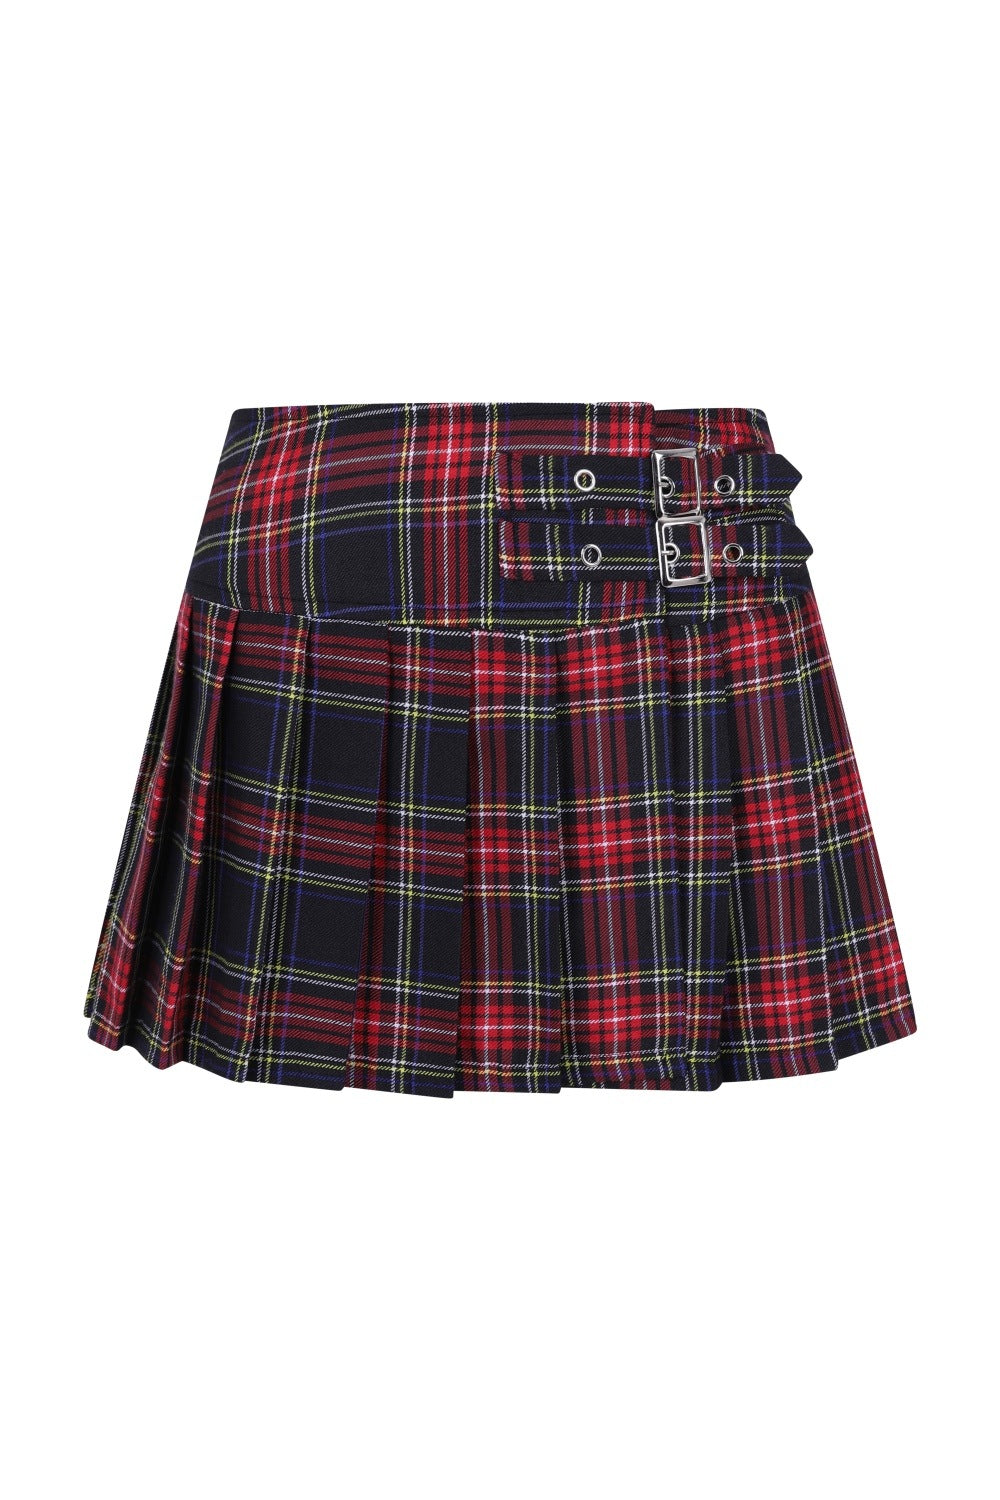 Banned Apparel Darkdoll Mini Skirt | Black Tartan